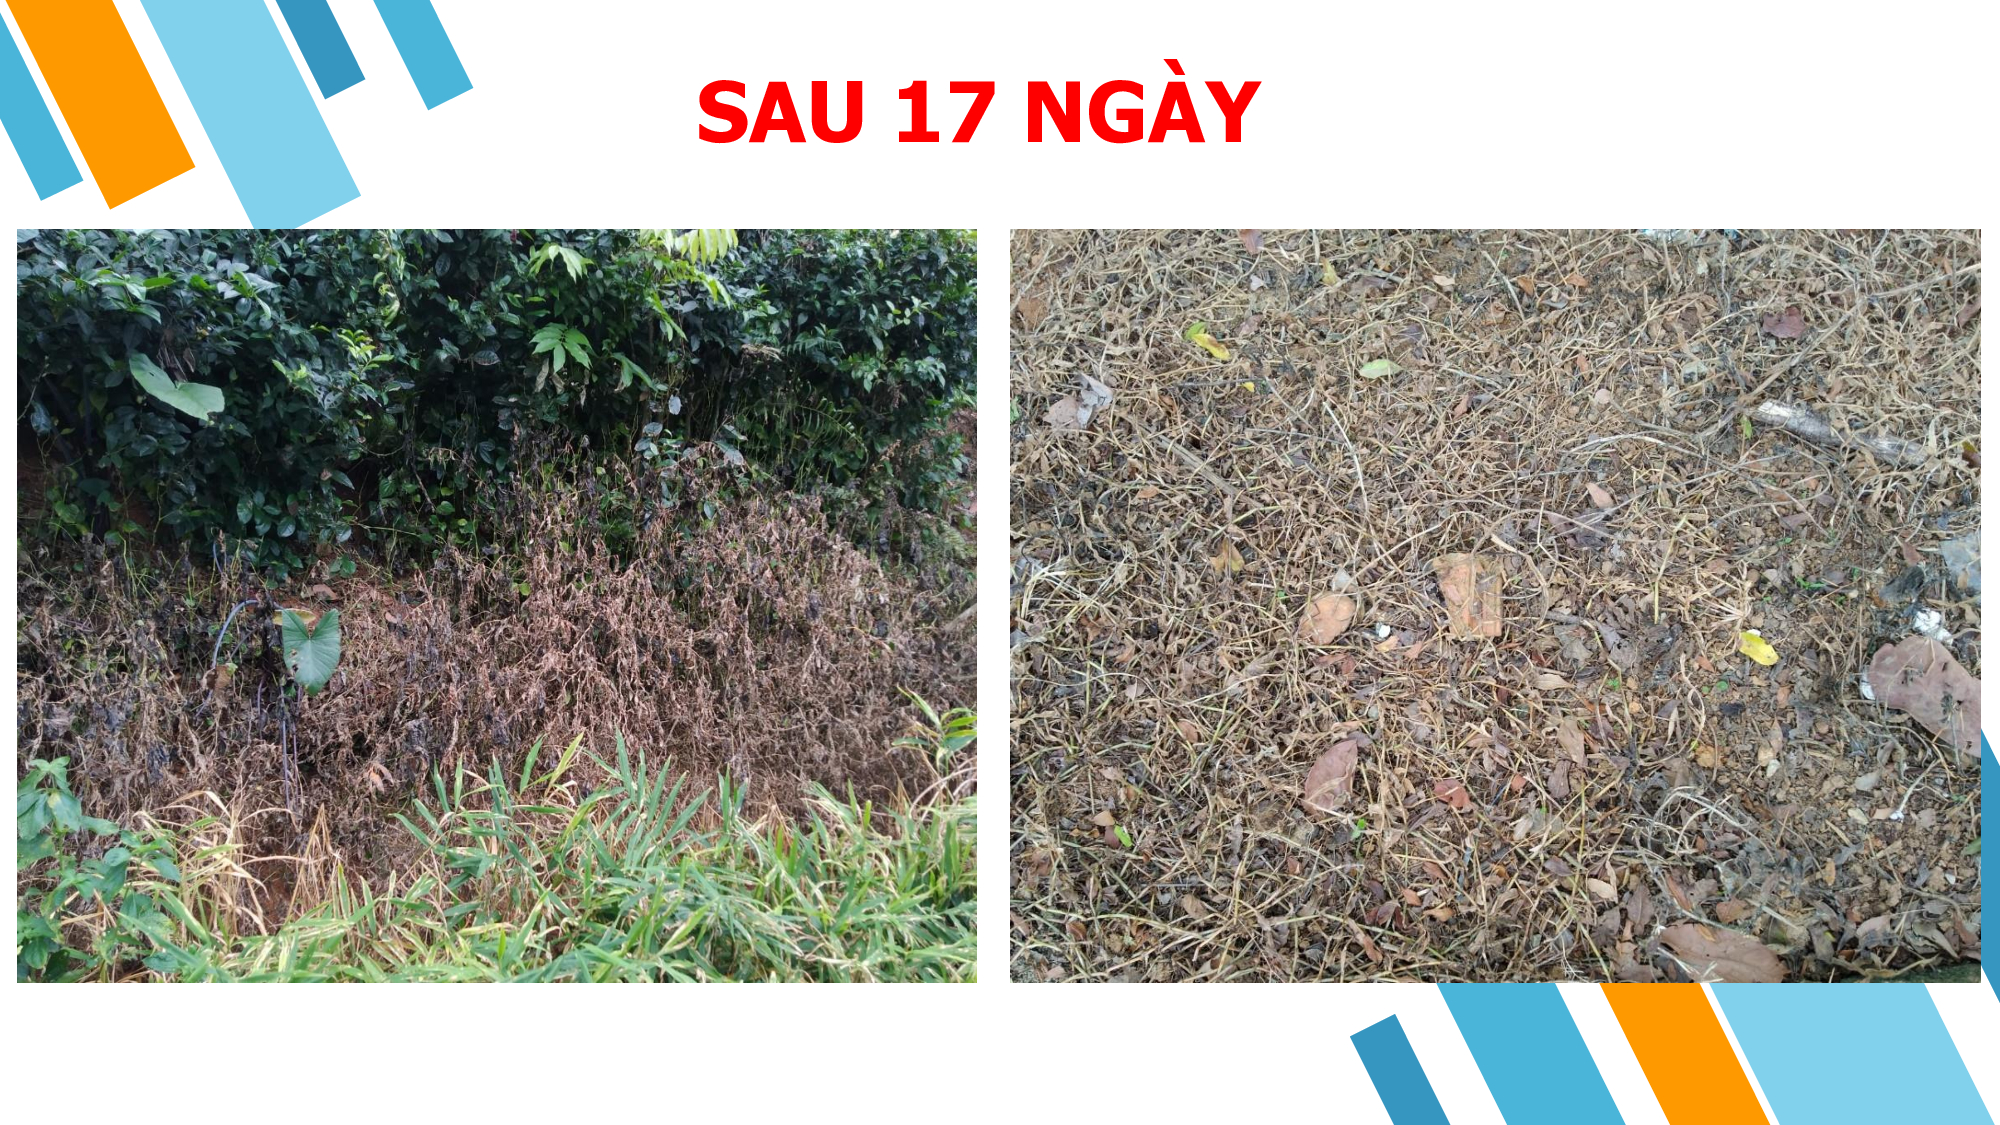 Hiệu lực thuốc trừ cỏ SUNFOSINAT 200SL (Glufosinate Ammonium 200g/l) trên Thài lài, Lá lốt, Mần trầu